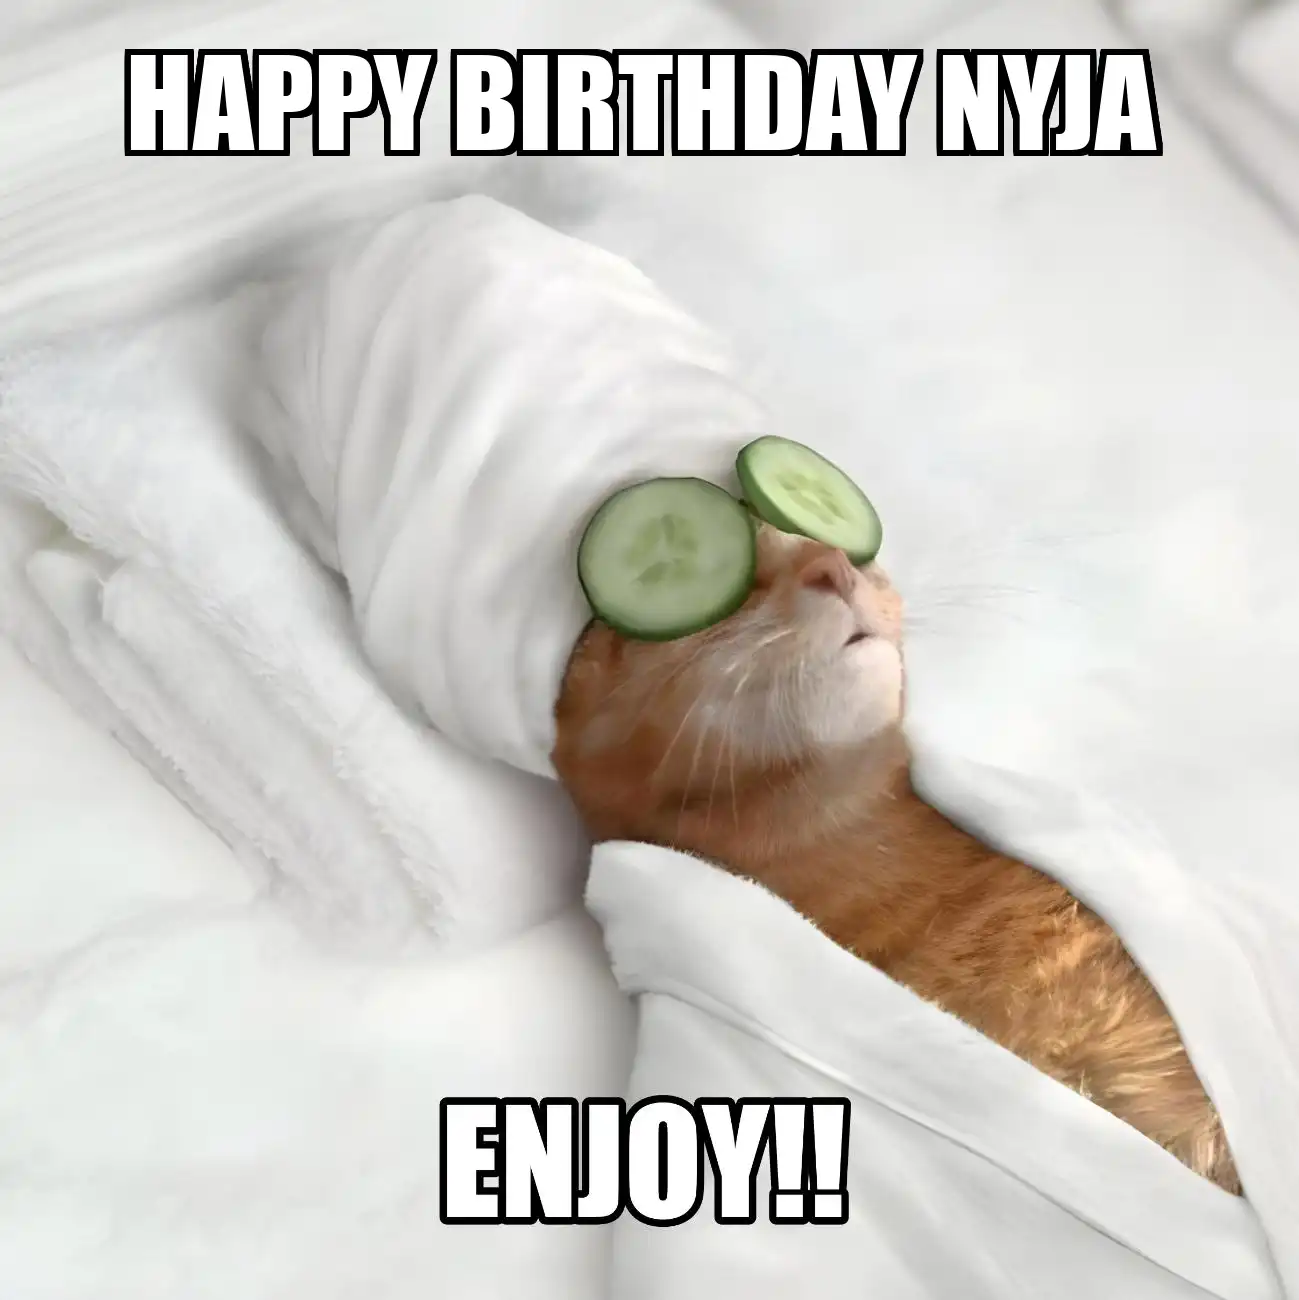 Happy Birthday Nyja Enjoy Cat Meme